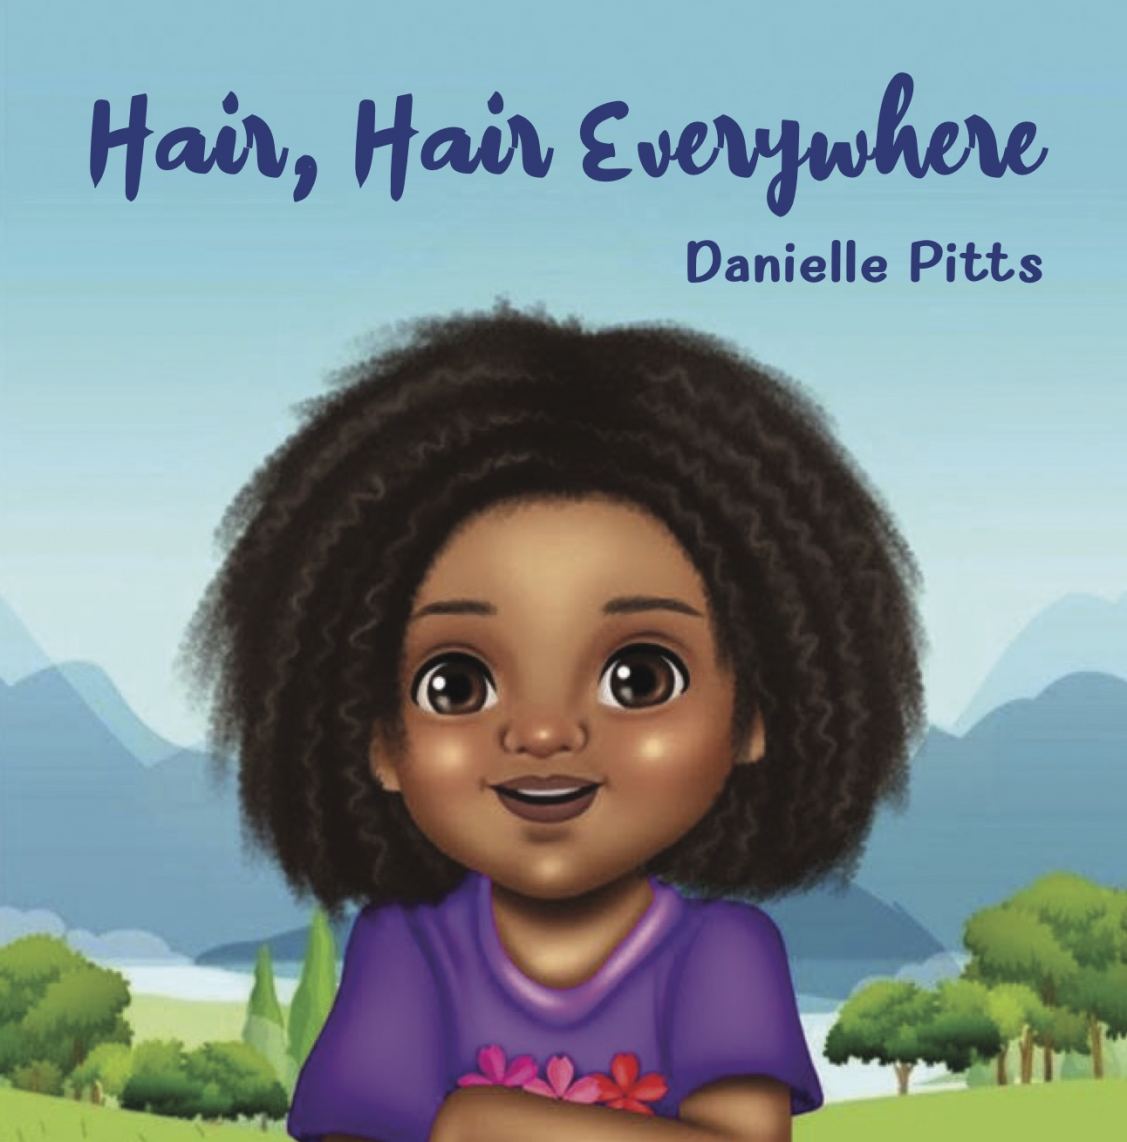 Hair Hair Everywhere by Danielle Pitts